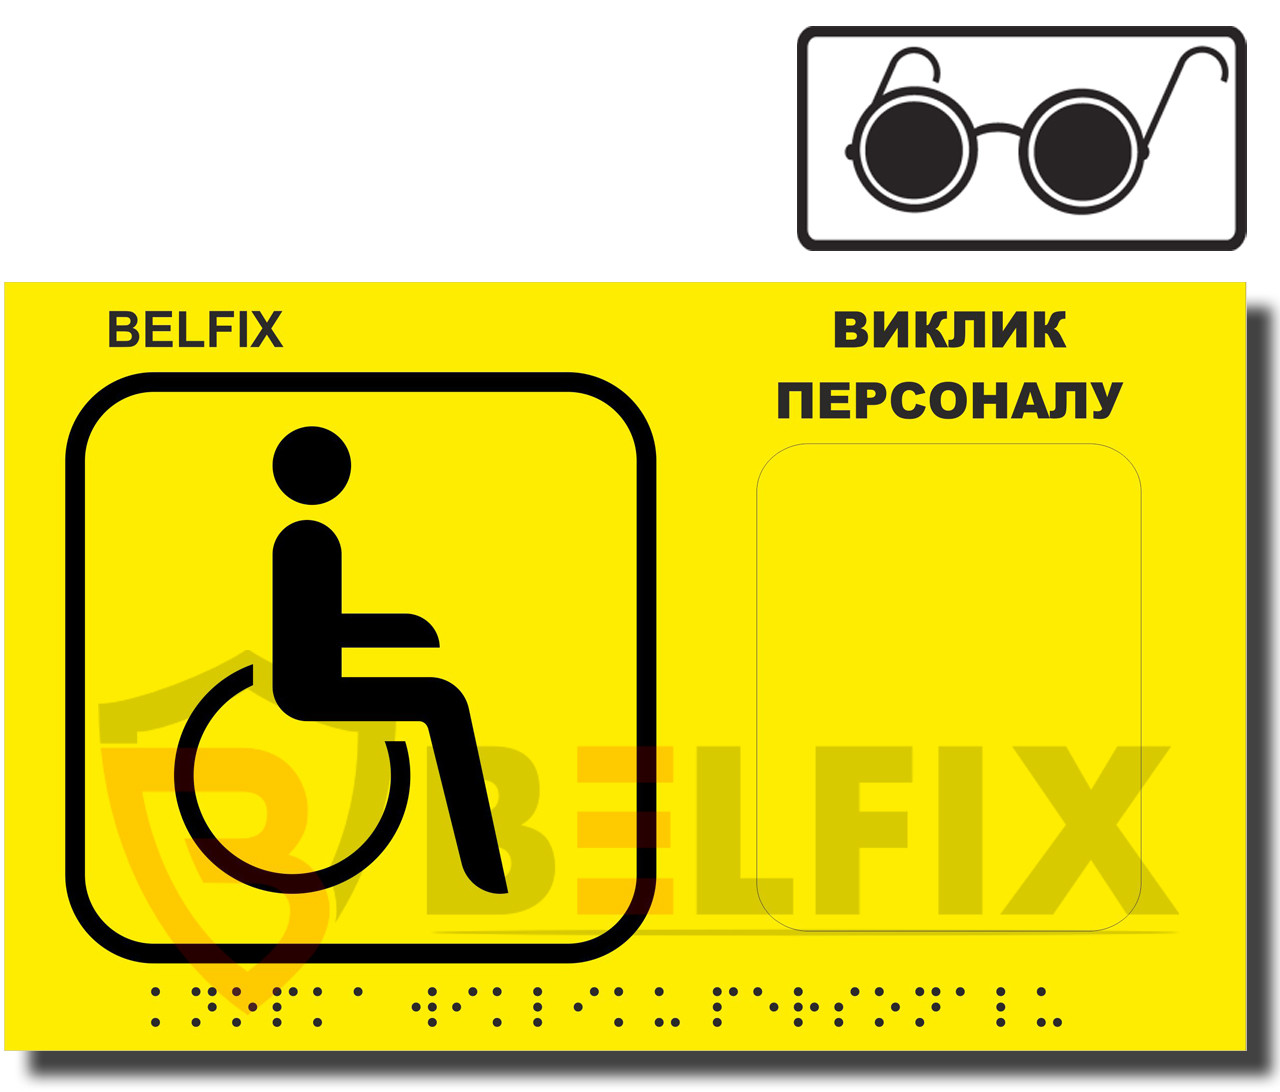 Тактильна Табличка з шрифтом БРАЙЛЯ для інвалідів, сліпих та людей з вадами зору, BELFIX-SB1YEB